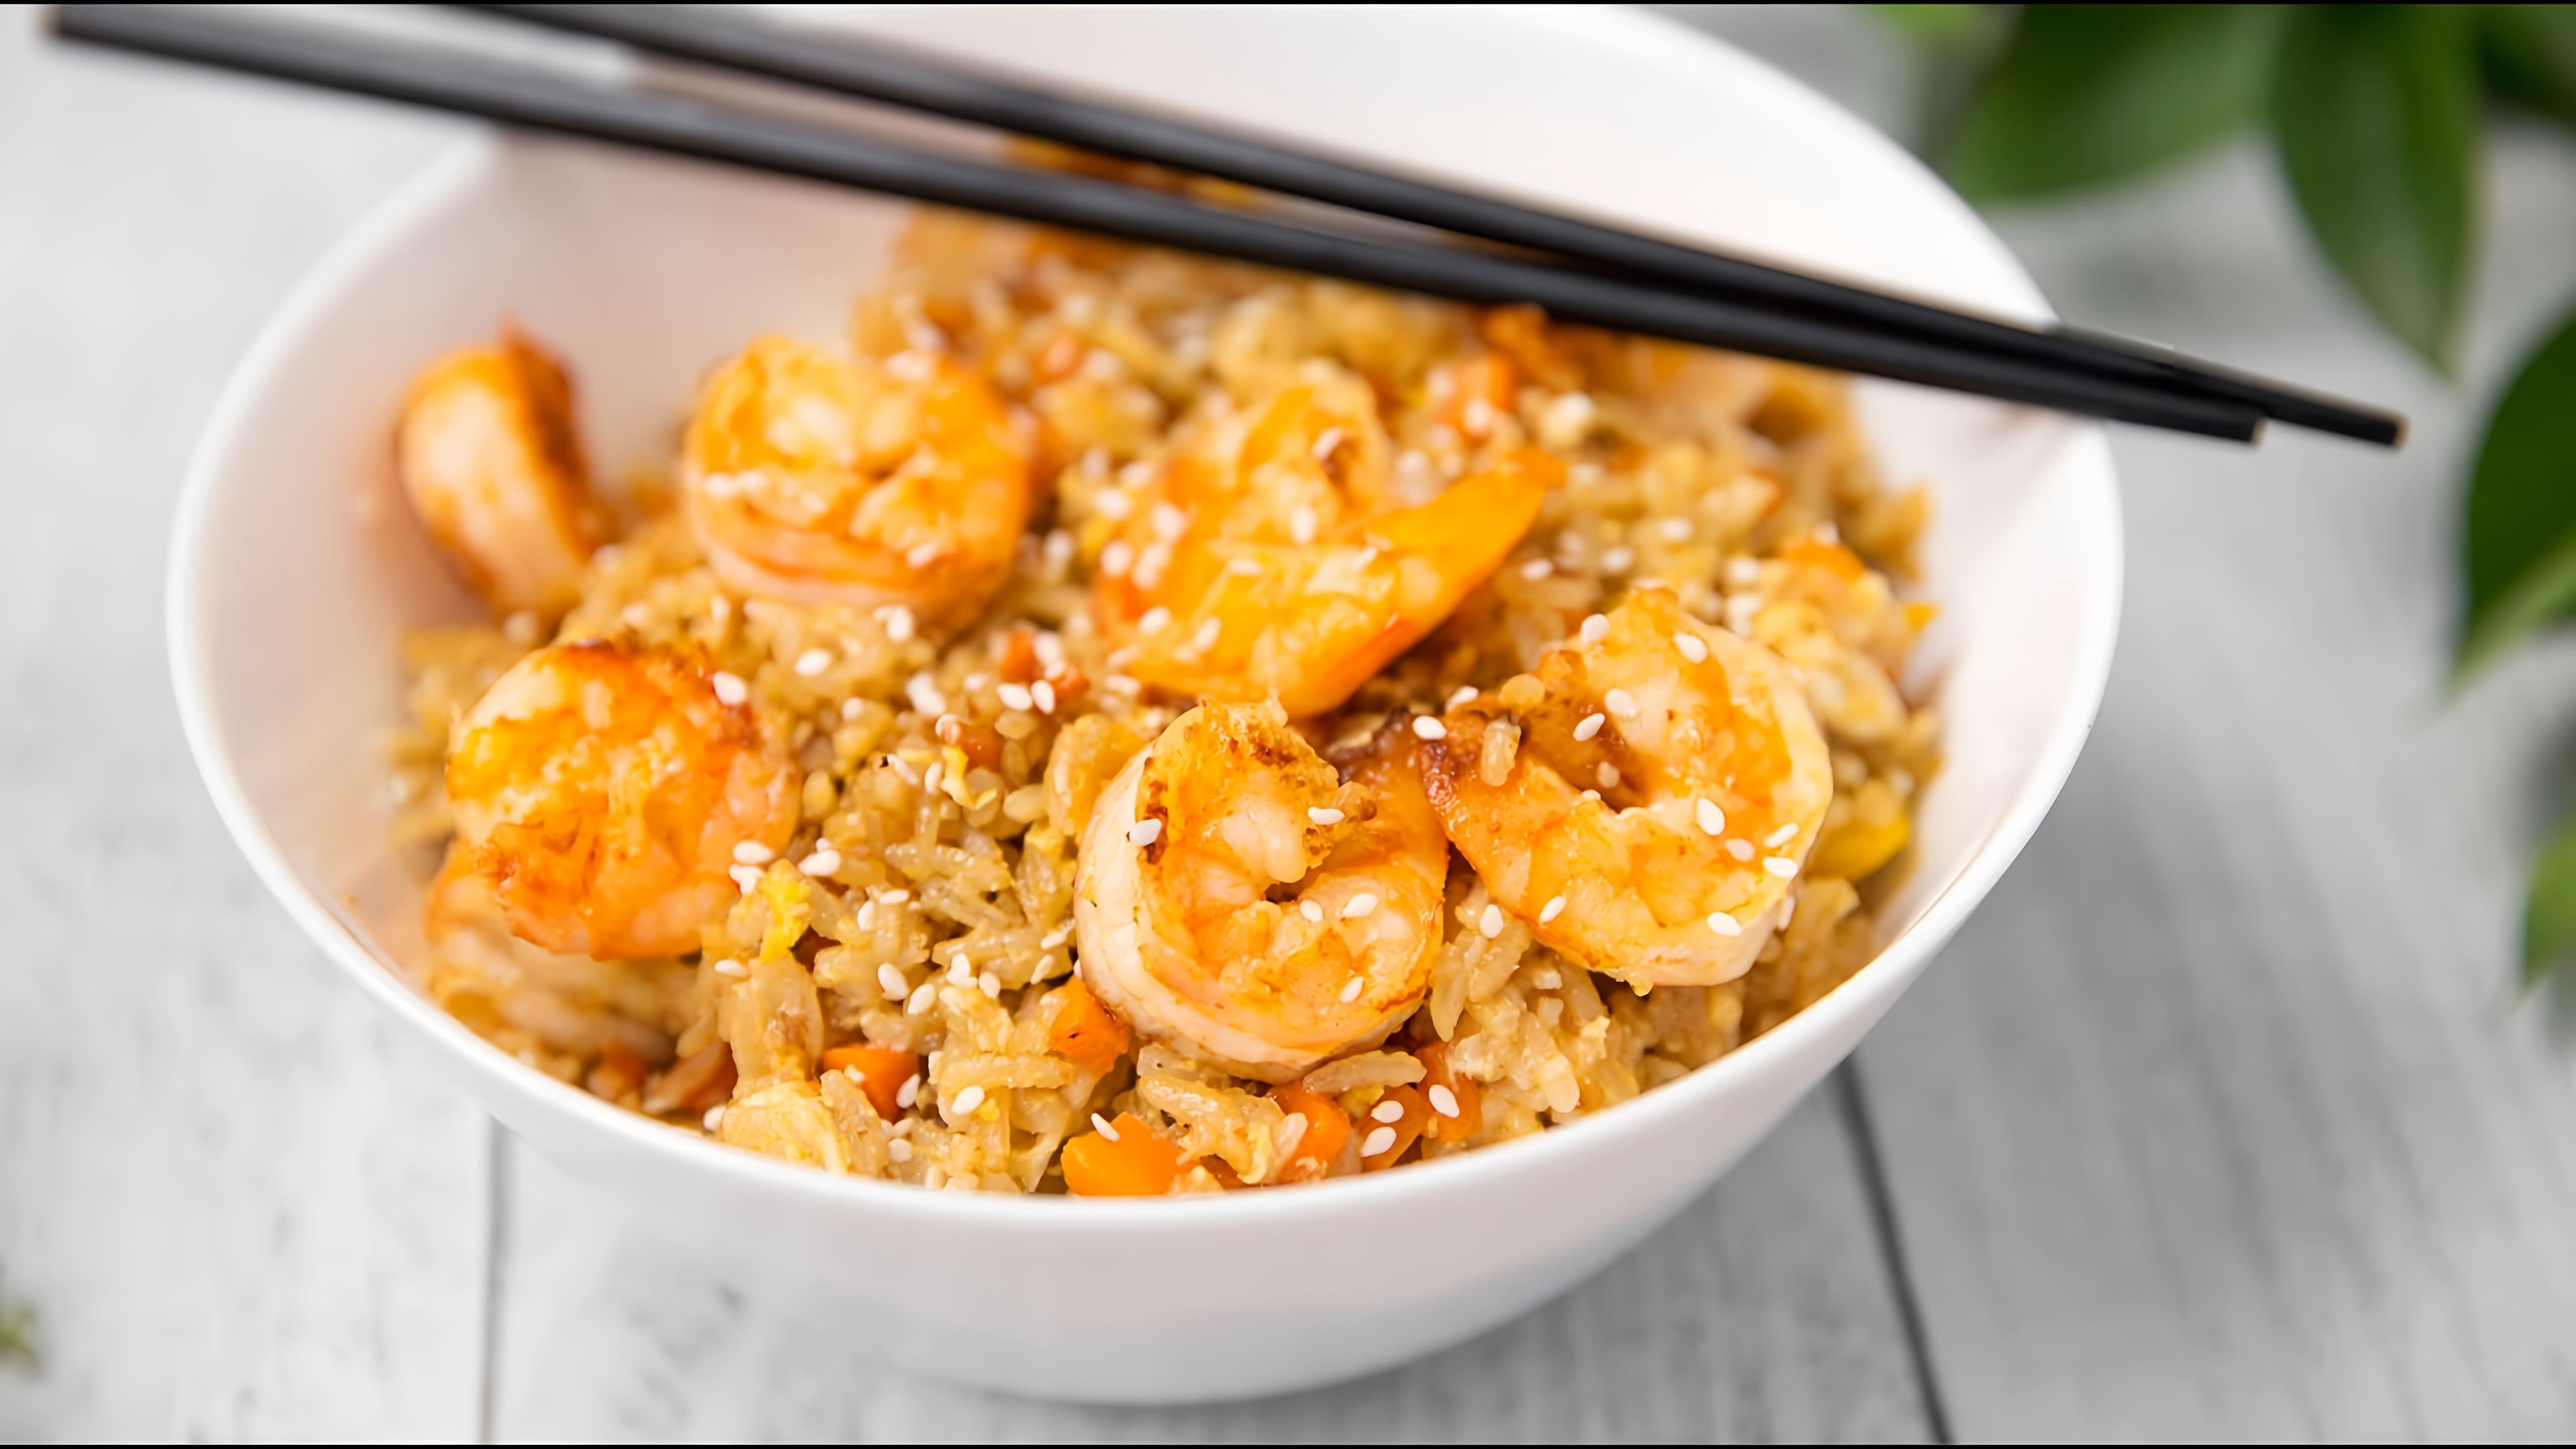 В этом видео демонстрируется рецепт приготовления жареного риса с креветками и овощами